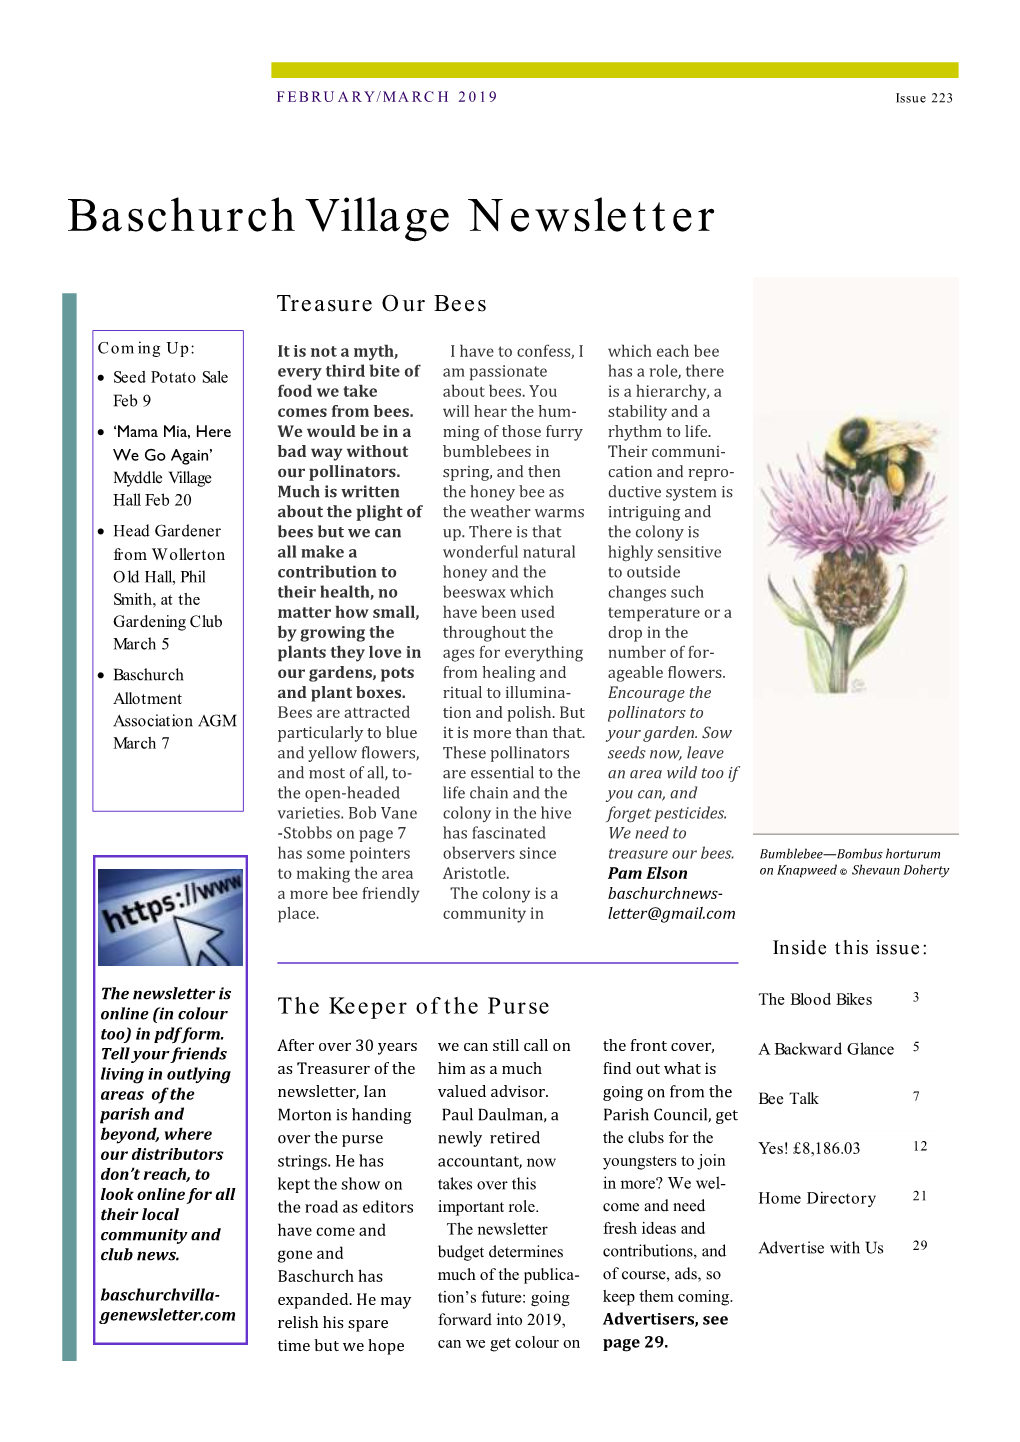 Baschurch Village Newsletter